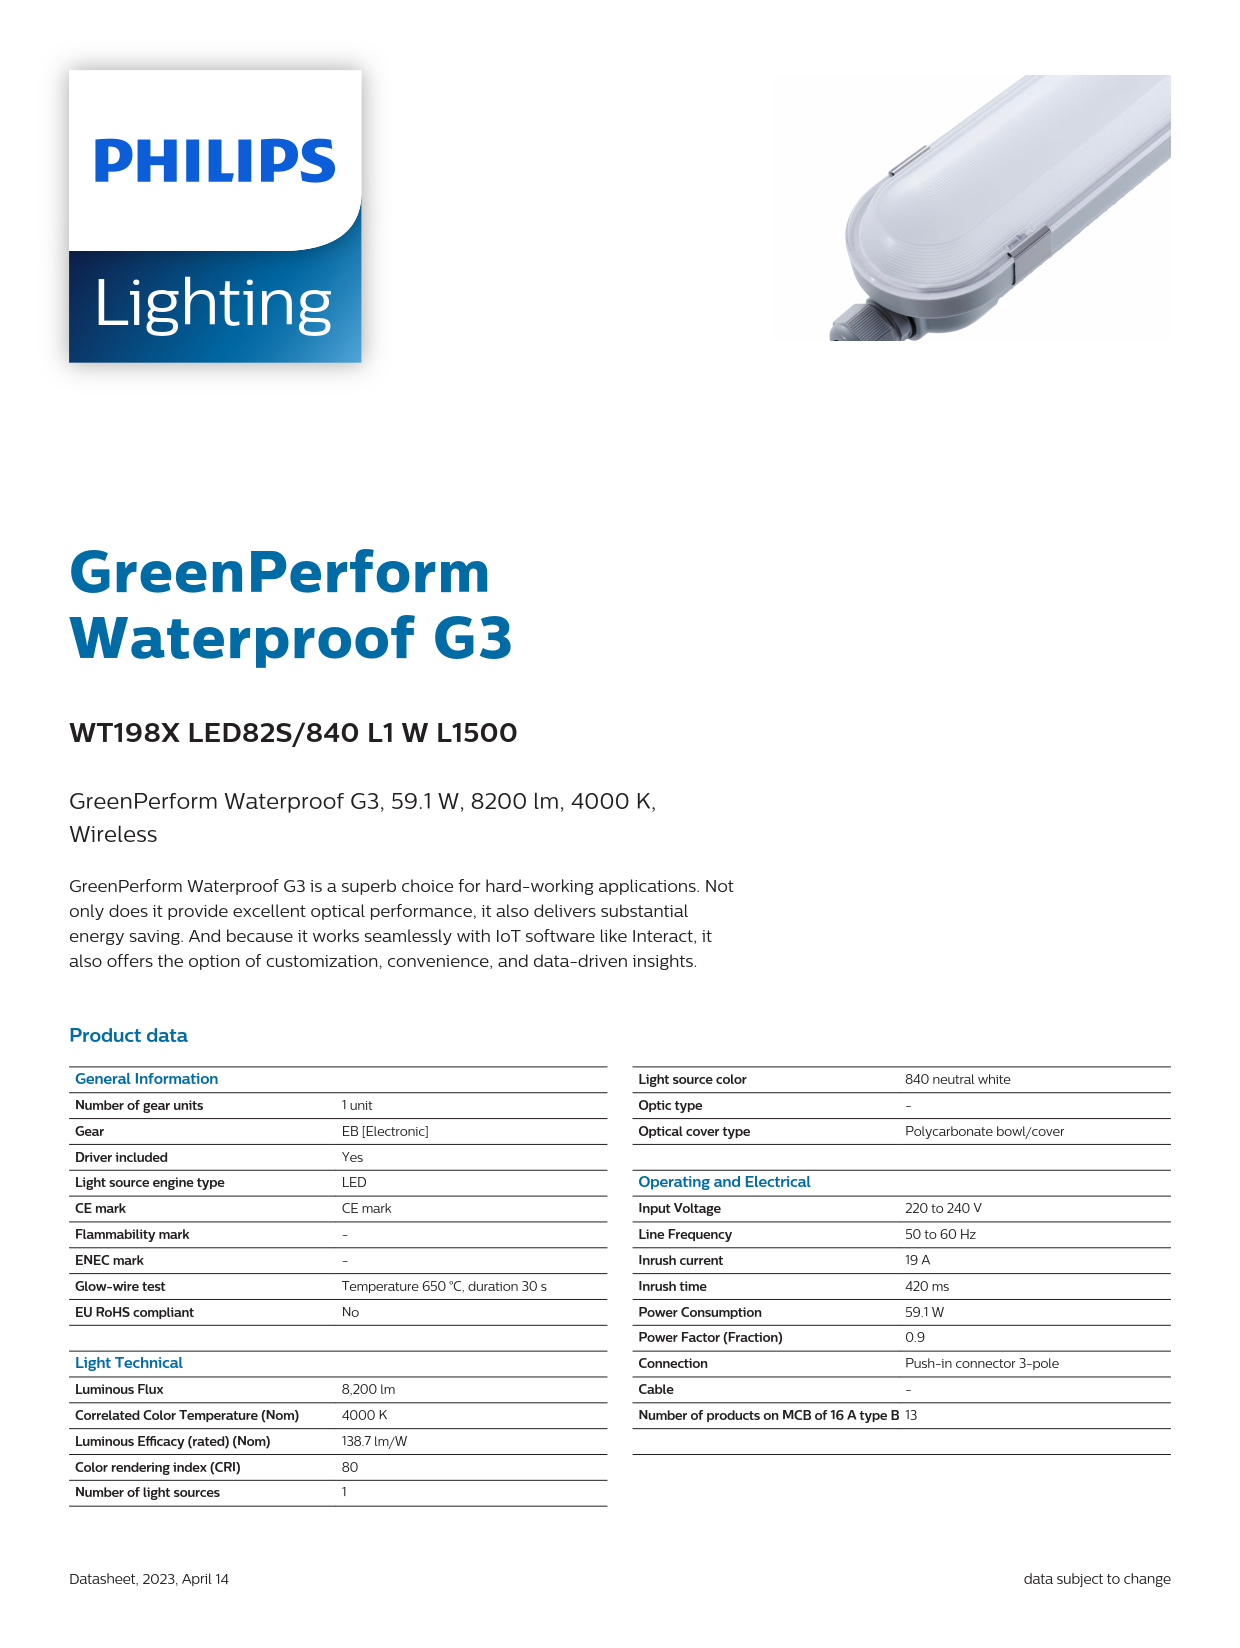 PHILIPS Waterproof Fixture light WT198X LED82S/840 L1 W L1500 911401551902